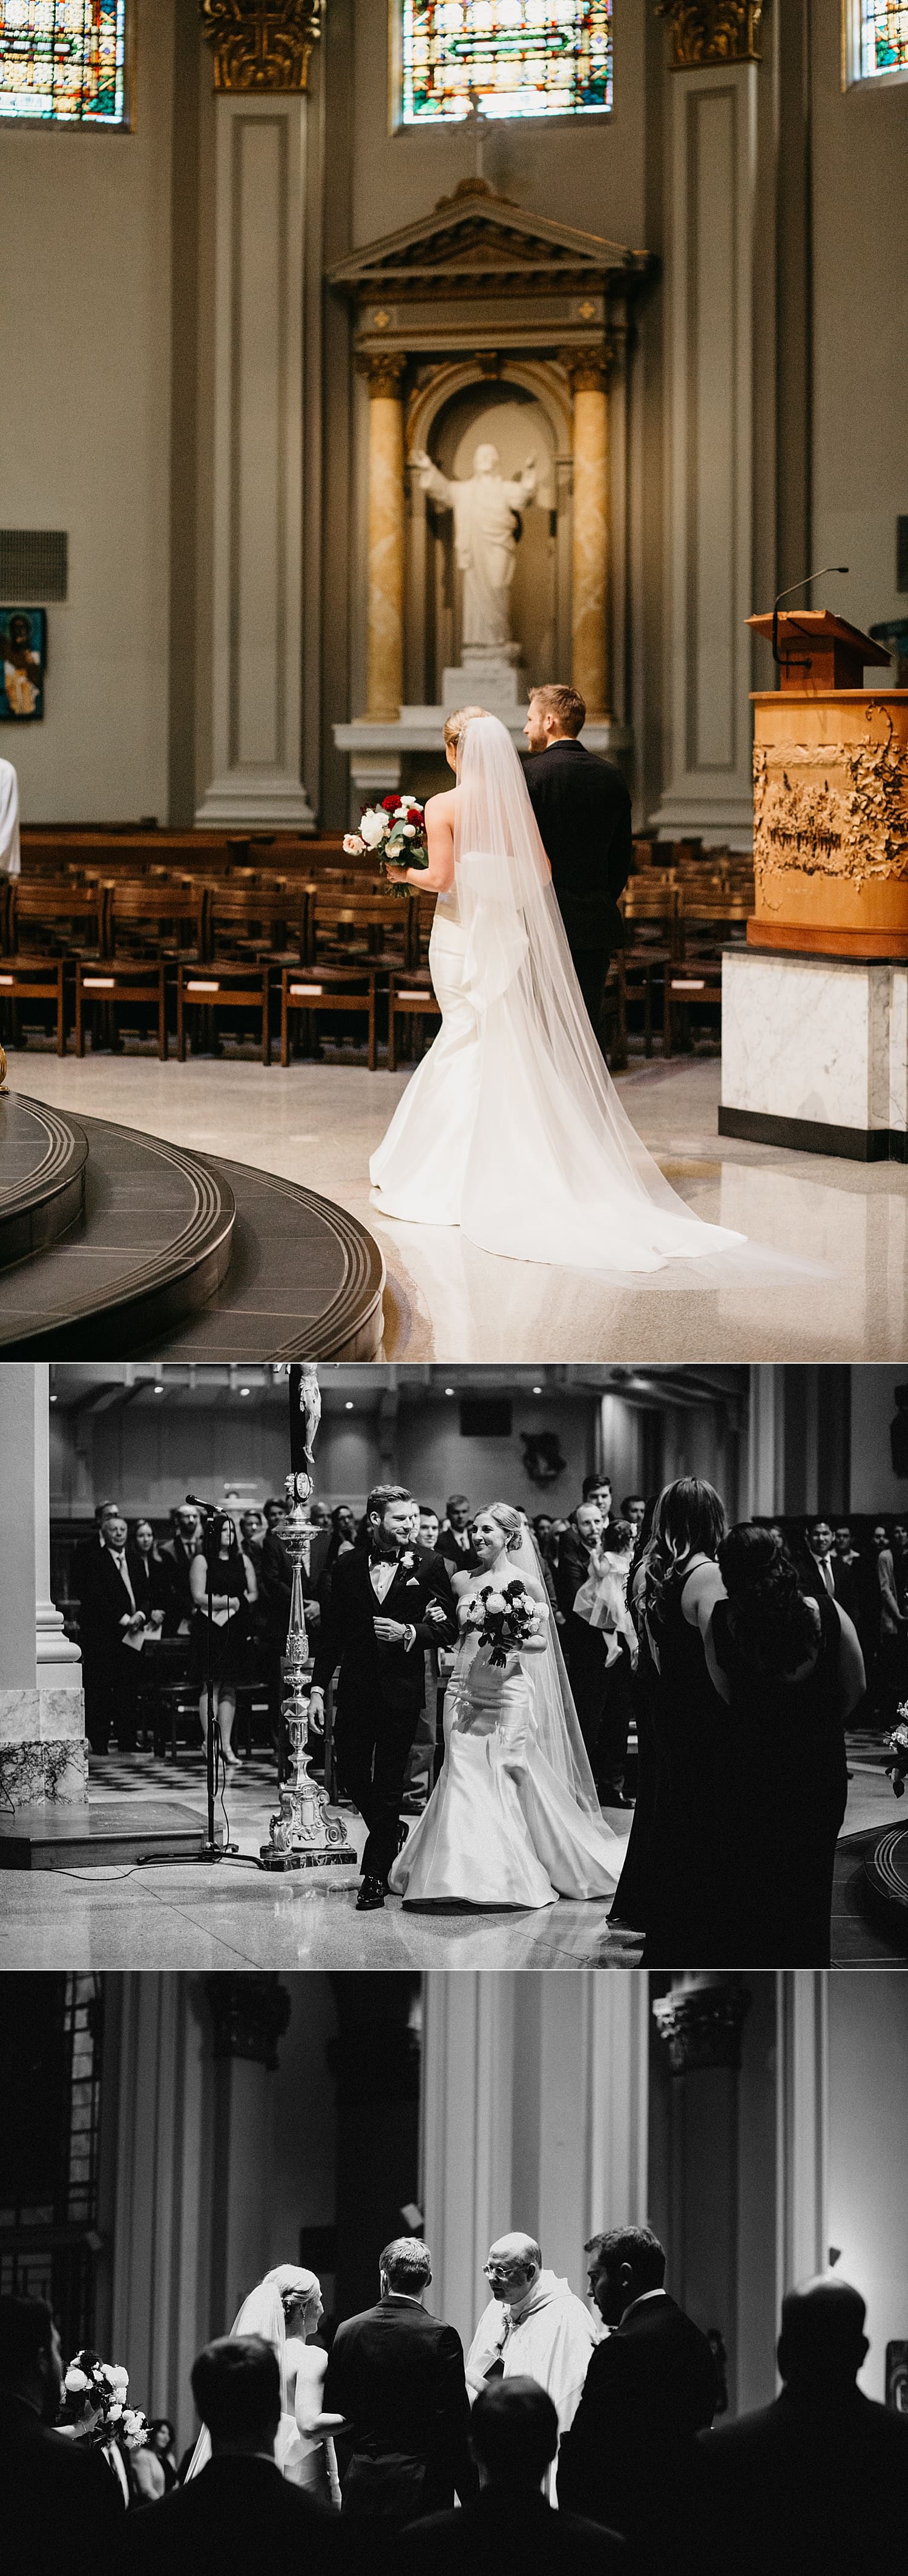 St James Cathedral Catholic wedding ceremony 415 Westlake Wedding by Marcela Pulido Seattle Wedding Photographer